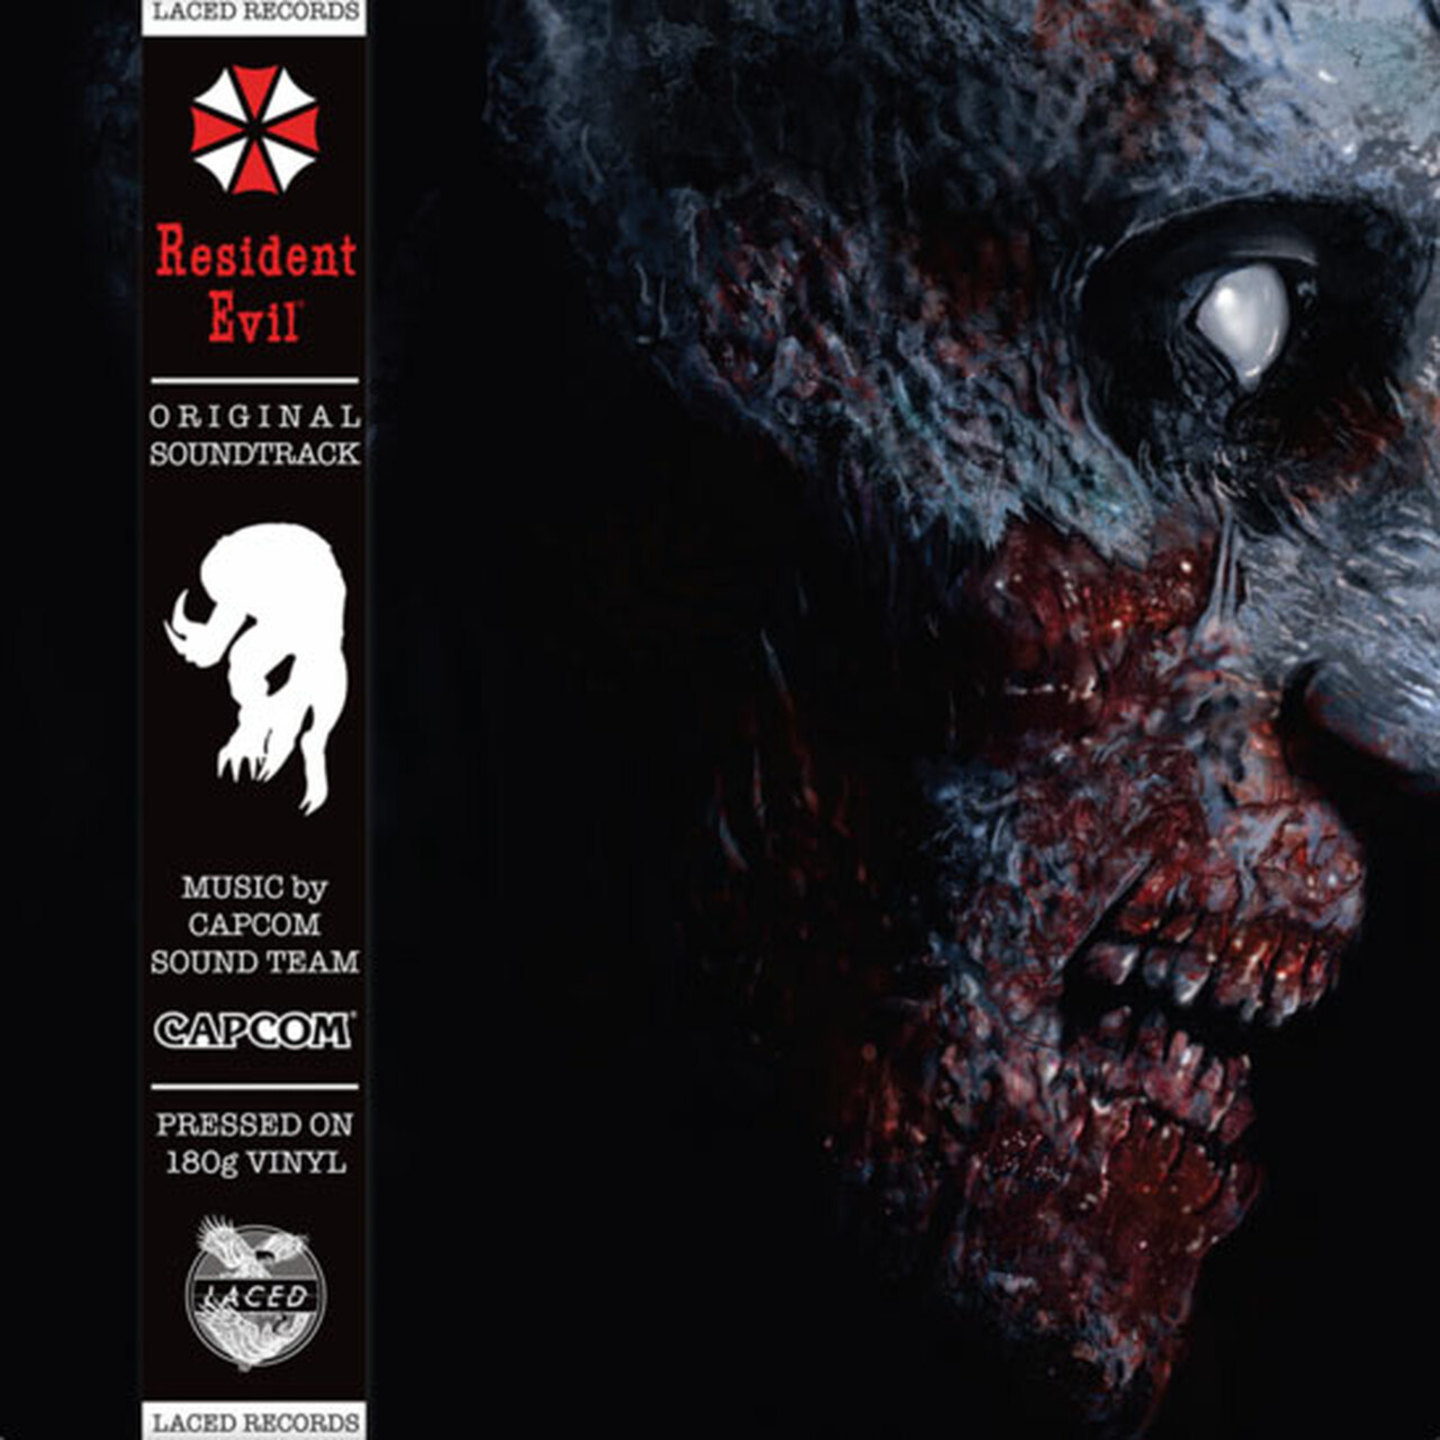 CAPCOM SOUND TEAM - Resident Evil Original Game Soundtrack LP 180g